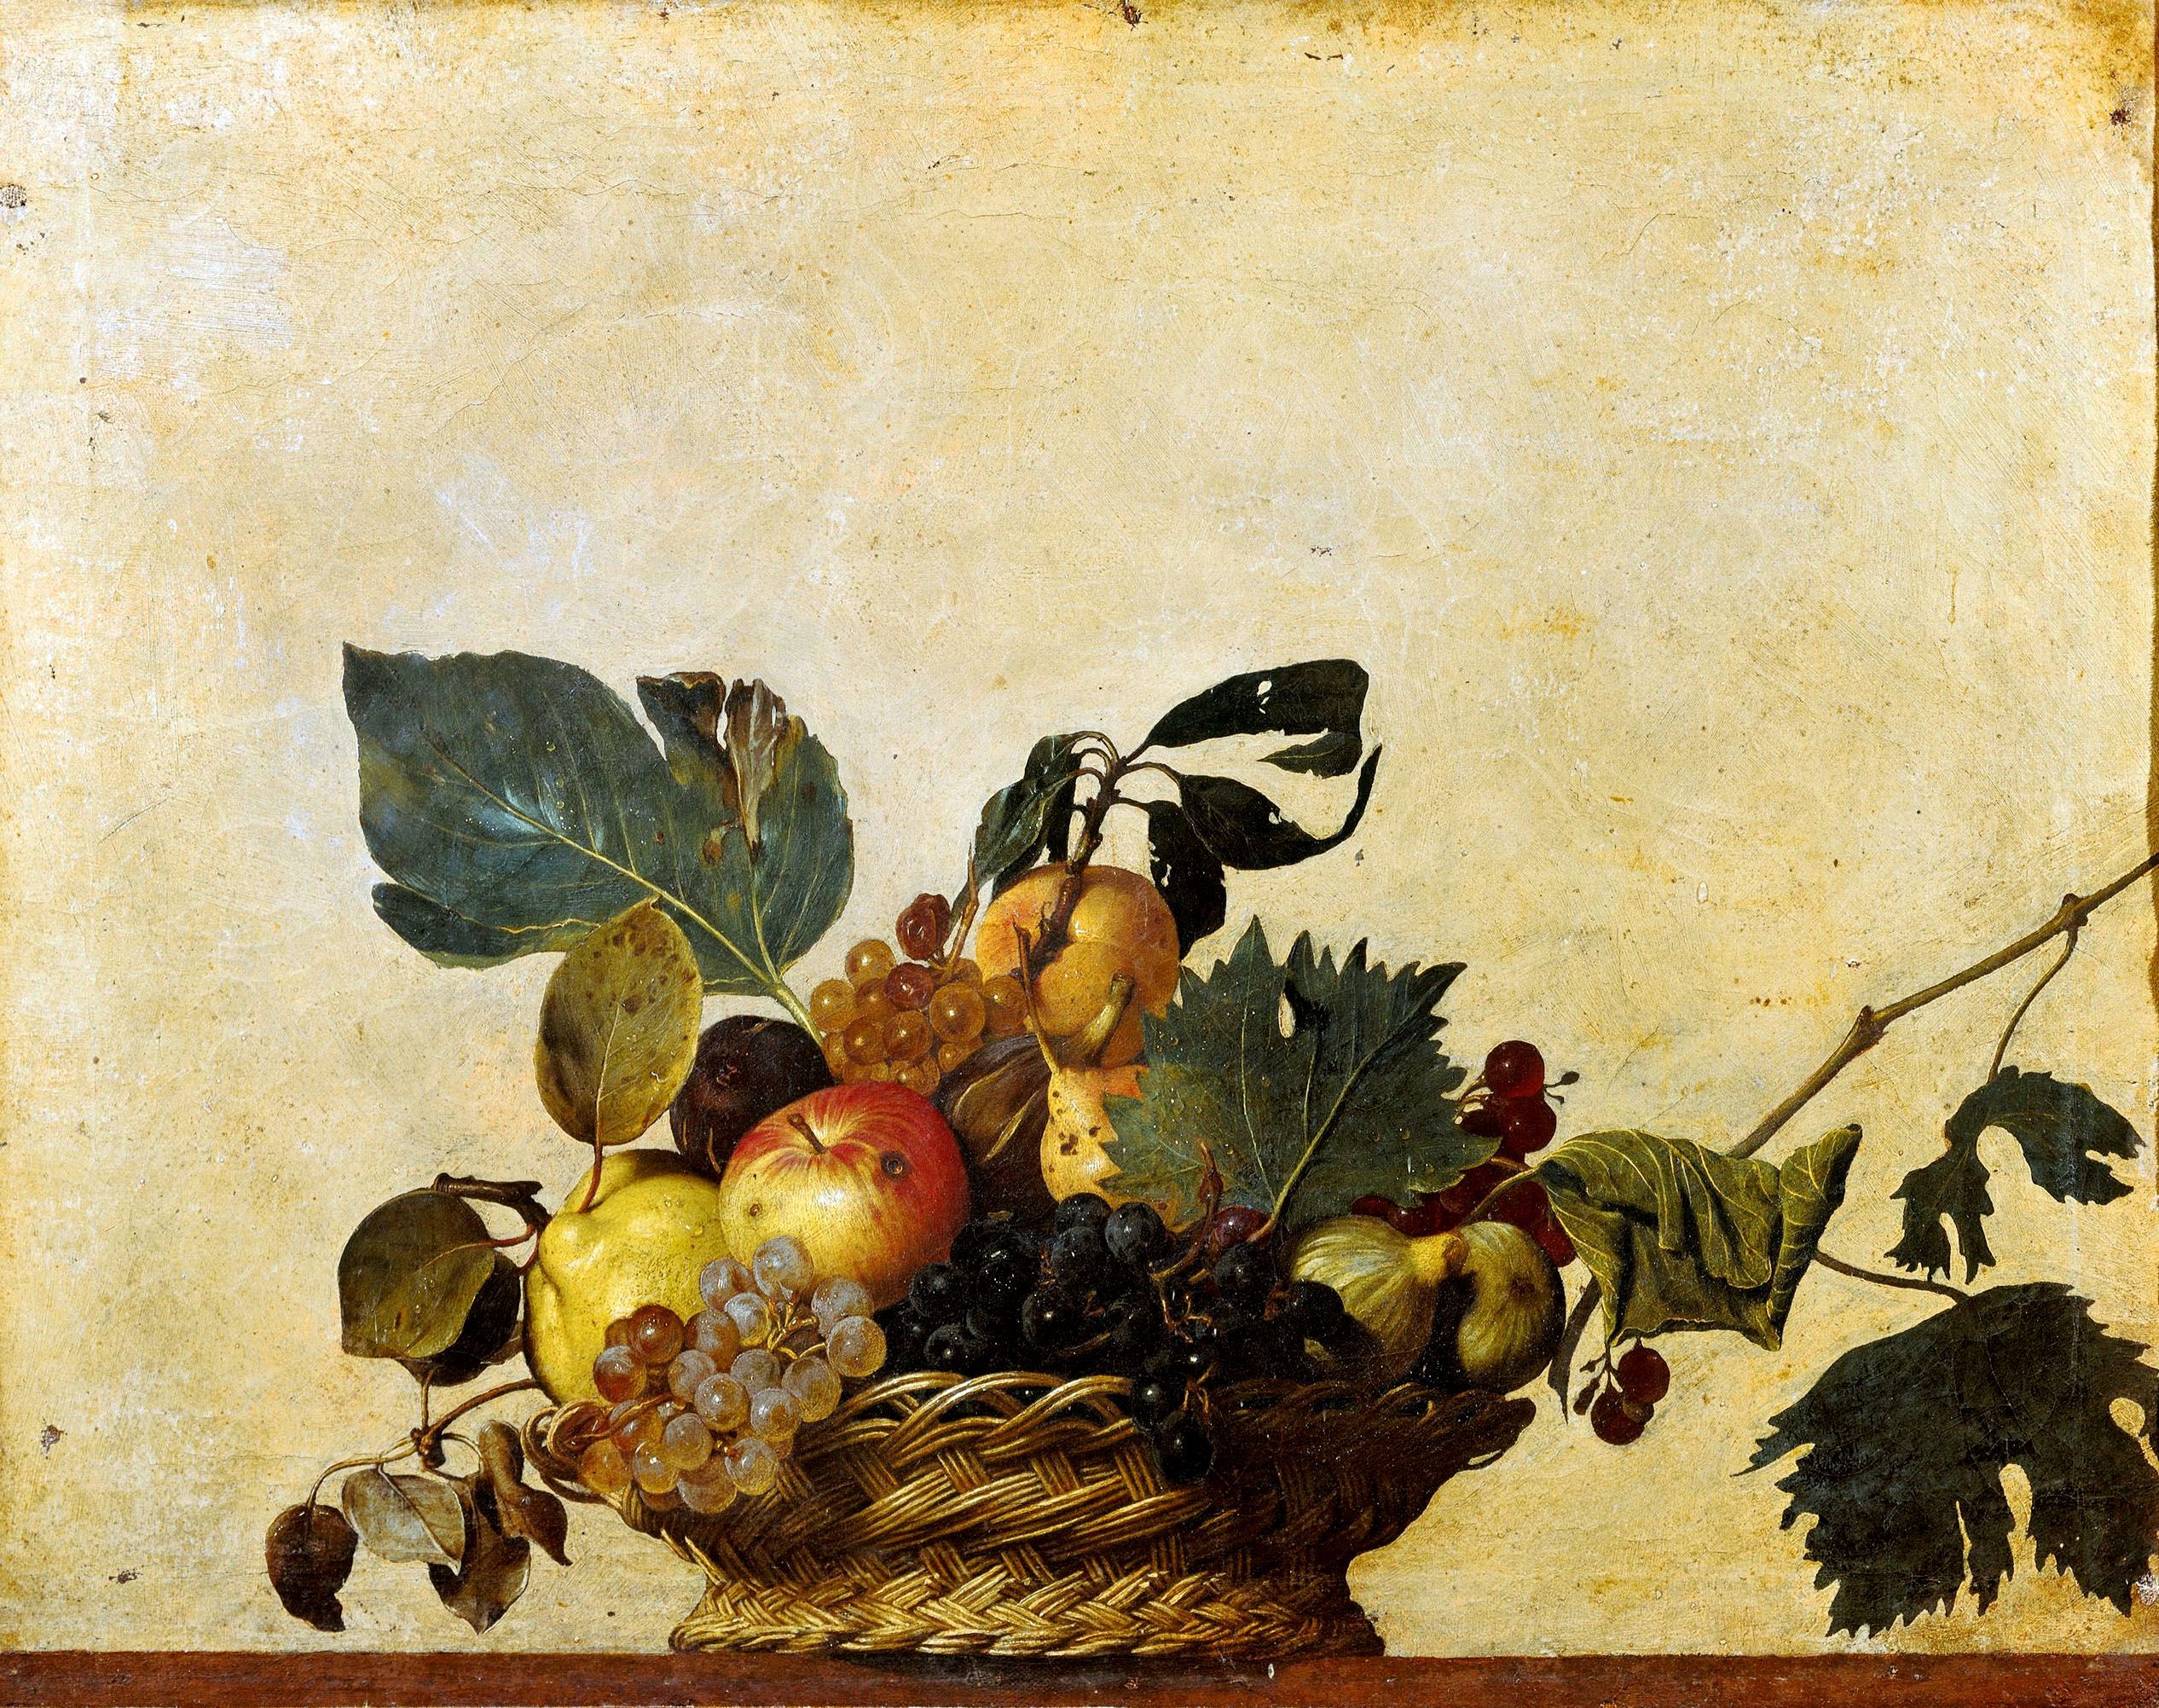 水果篮 by 米开朗基罗·梅里西·达 卡拉瓦乔 - 1610年 - 47 x 60.8 厘米 